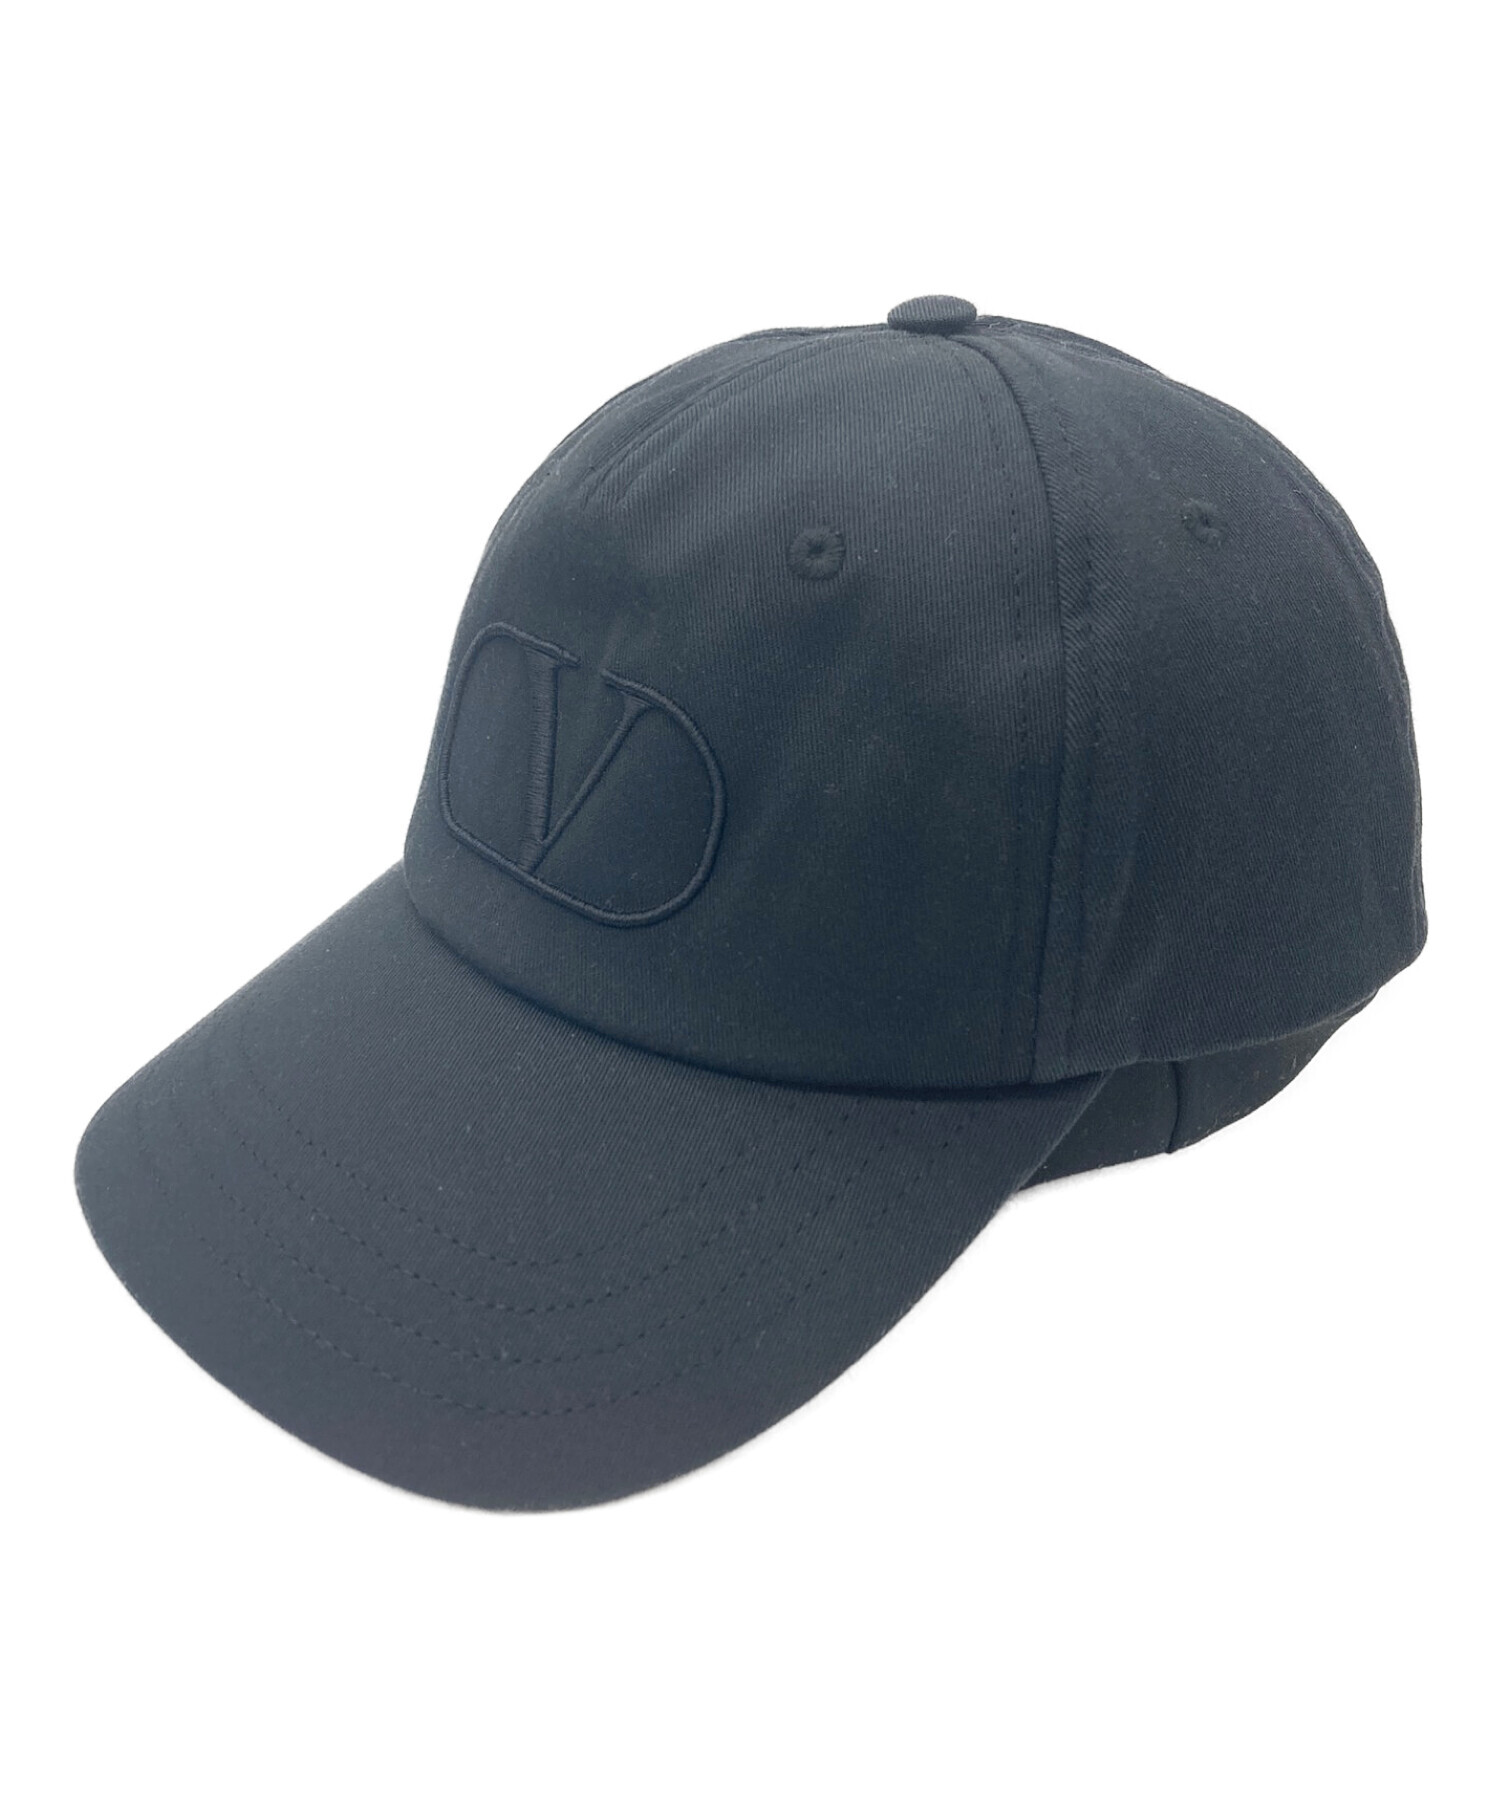 ヴァレンティノ キャップ ロゴ - 帽子